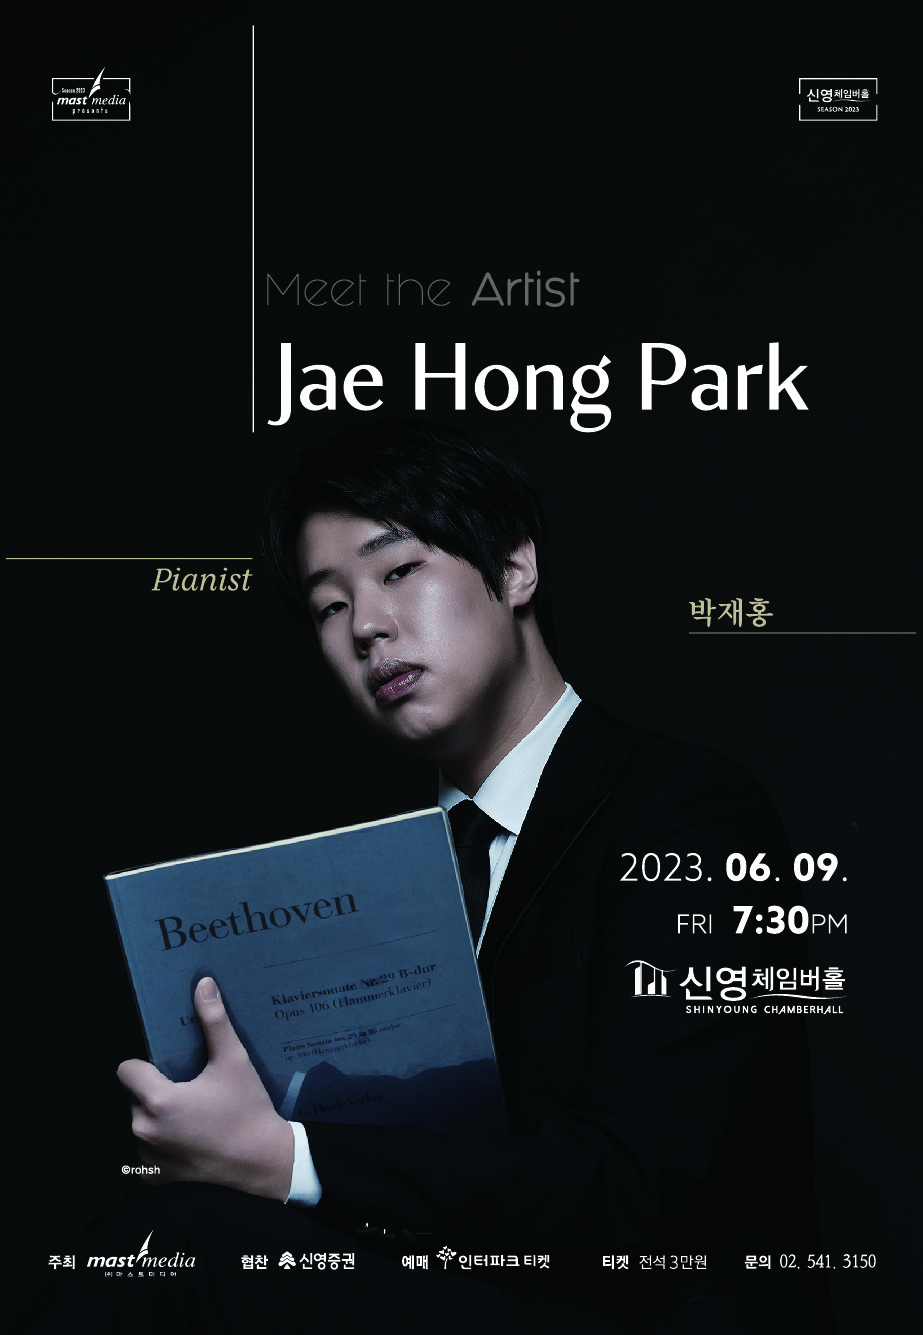 Meet the Artist 피아니스트 박재홍 | 2023년 6월 9일 금요일 오후 7시 30분 | 신영체임버홀